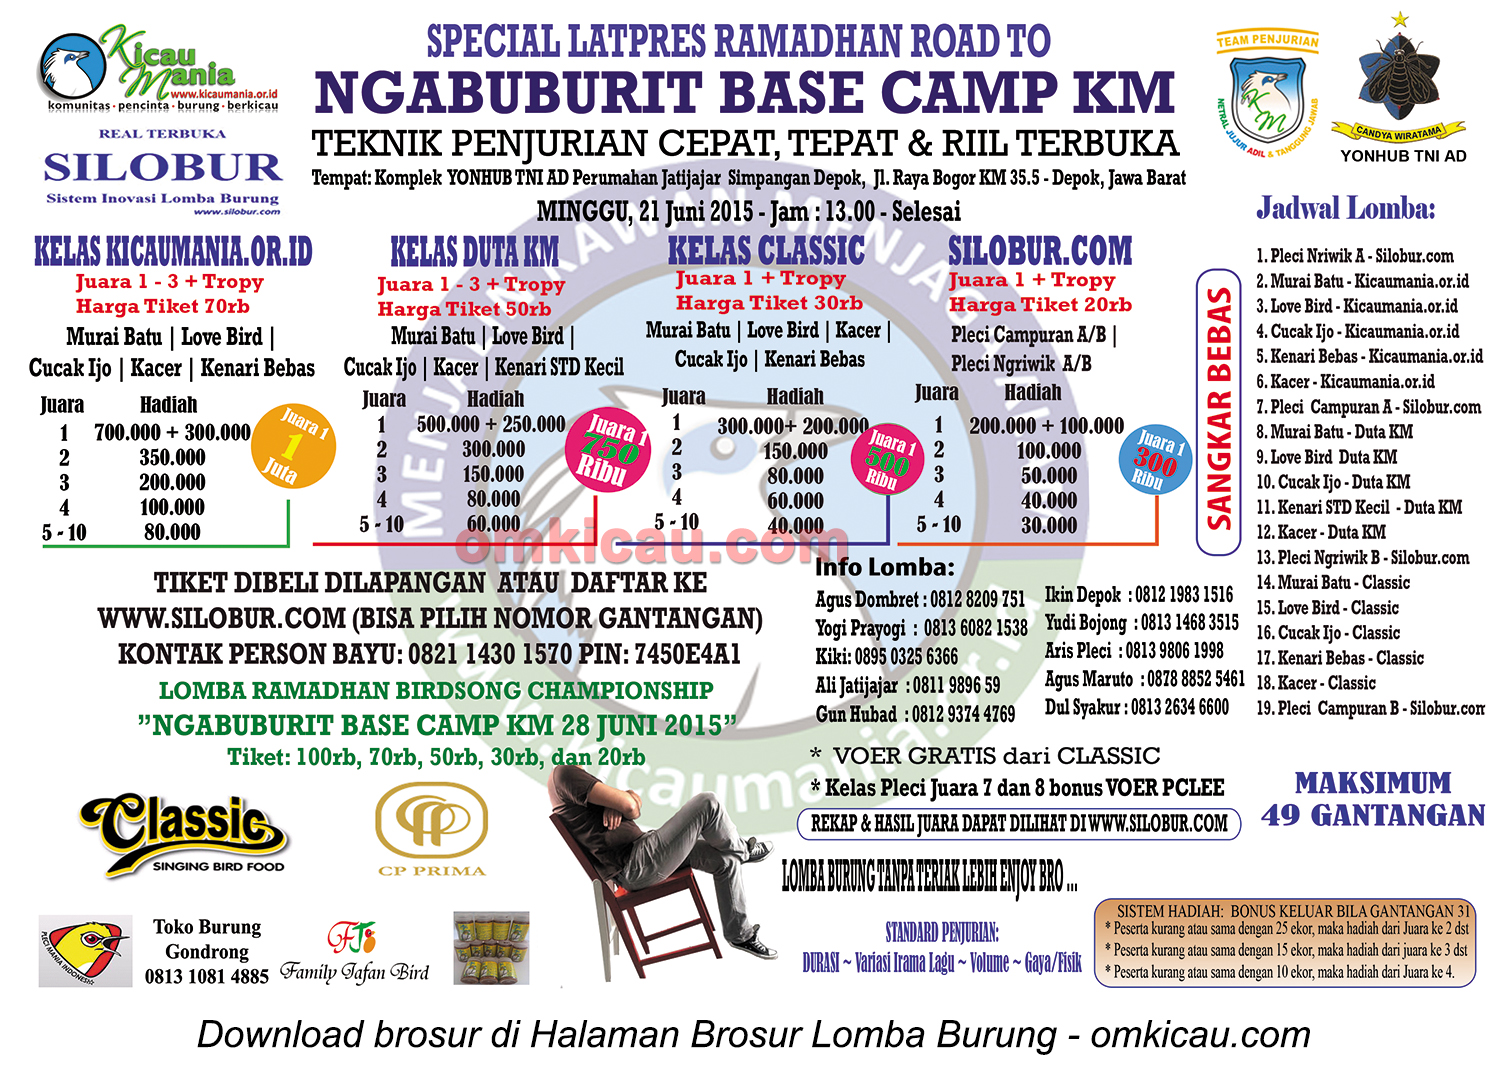 Brosur Spesial Latpres Ramadhan Road to Ngabuburit Base Camp KM, Depok, 21 Juni 2015